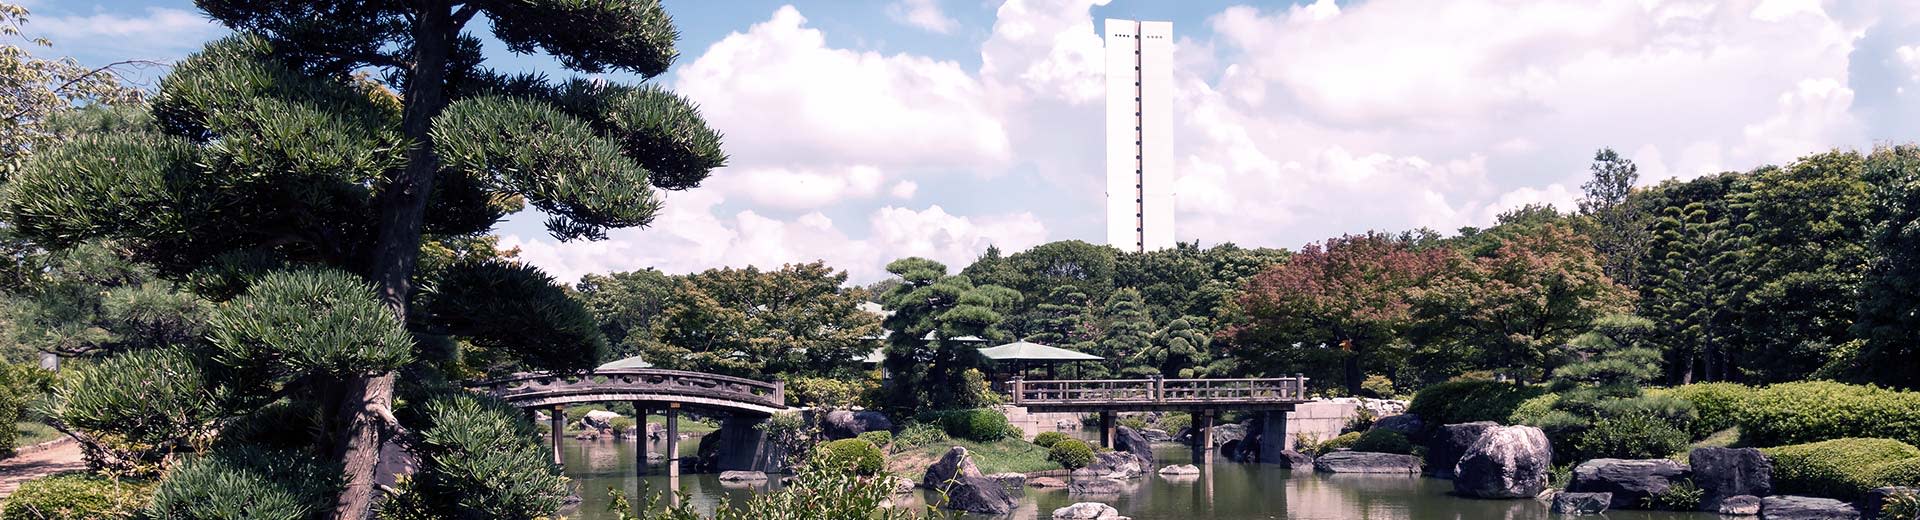 Un jardín japonés verde tradicional domina la imagen, con un solo edificio blanco que se avecina en el fondo.